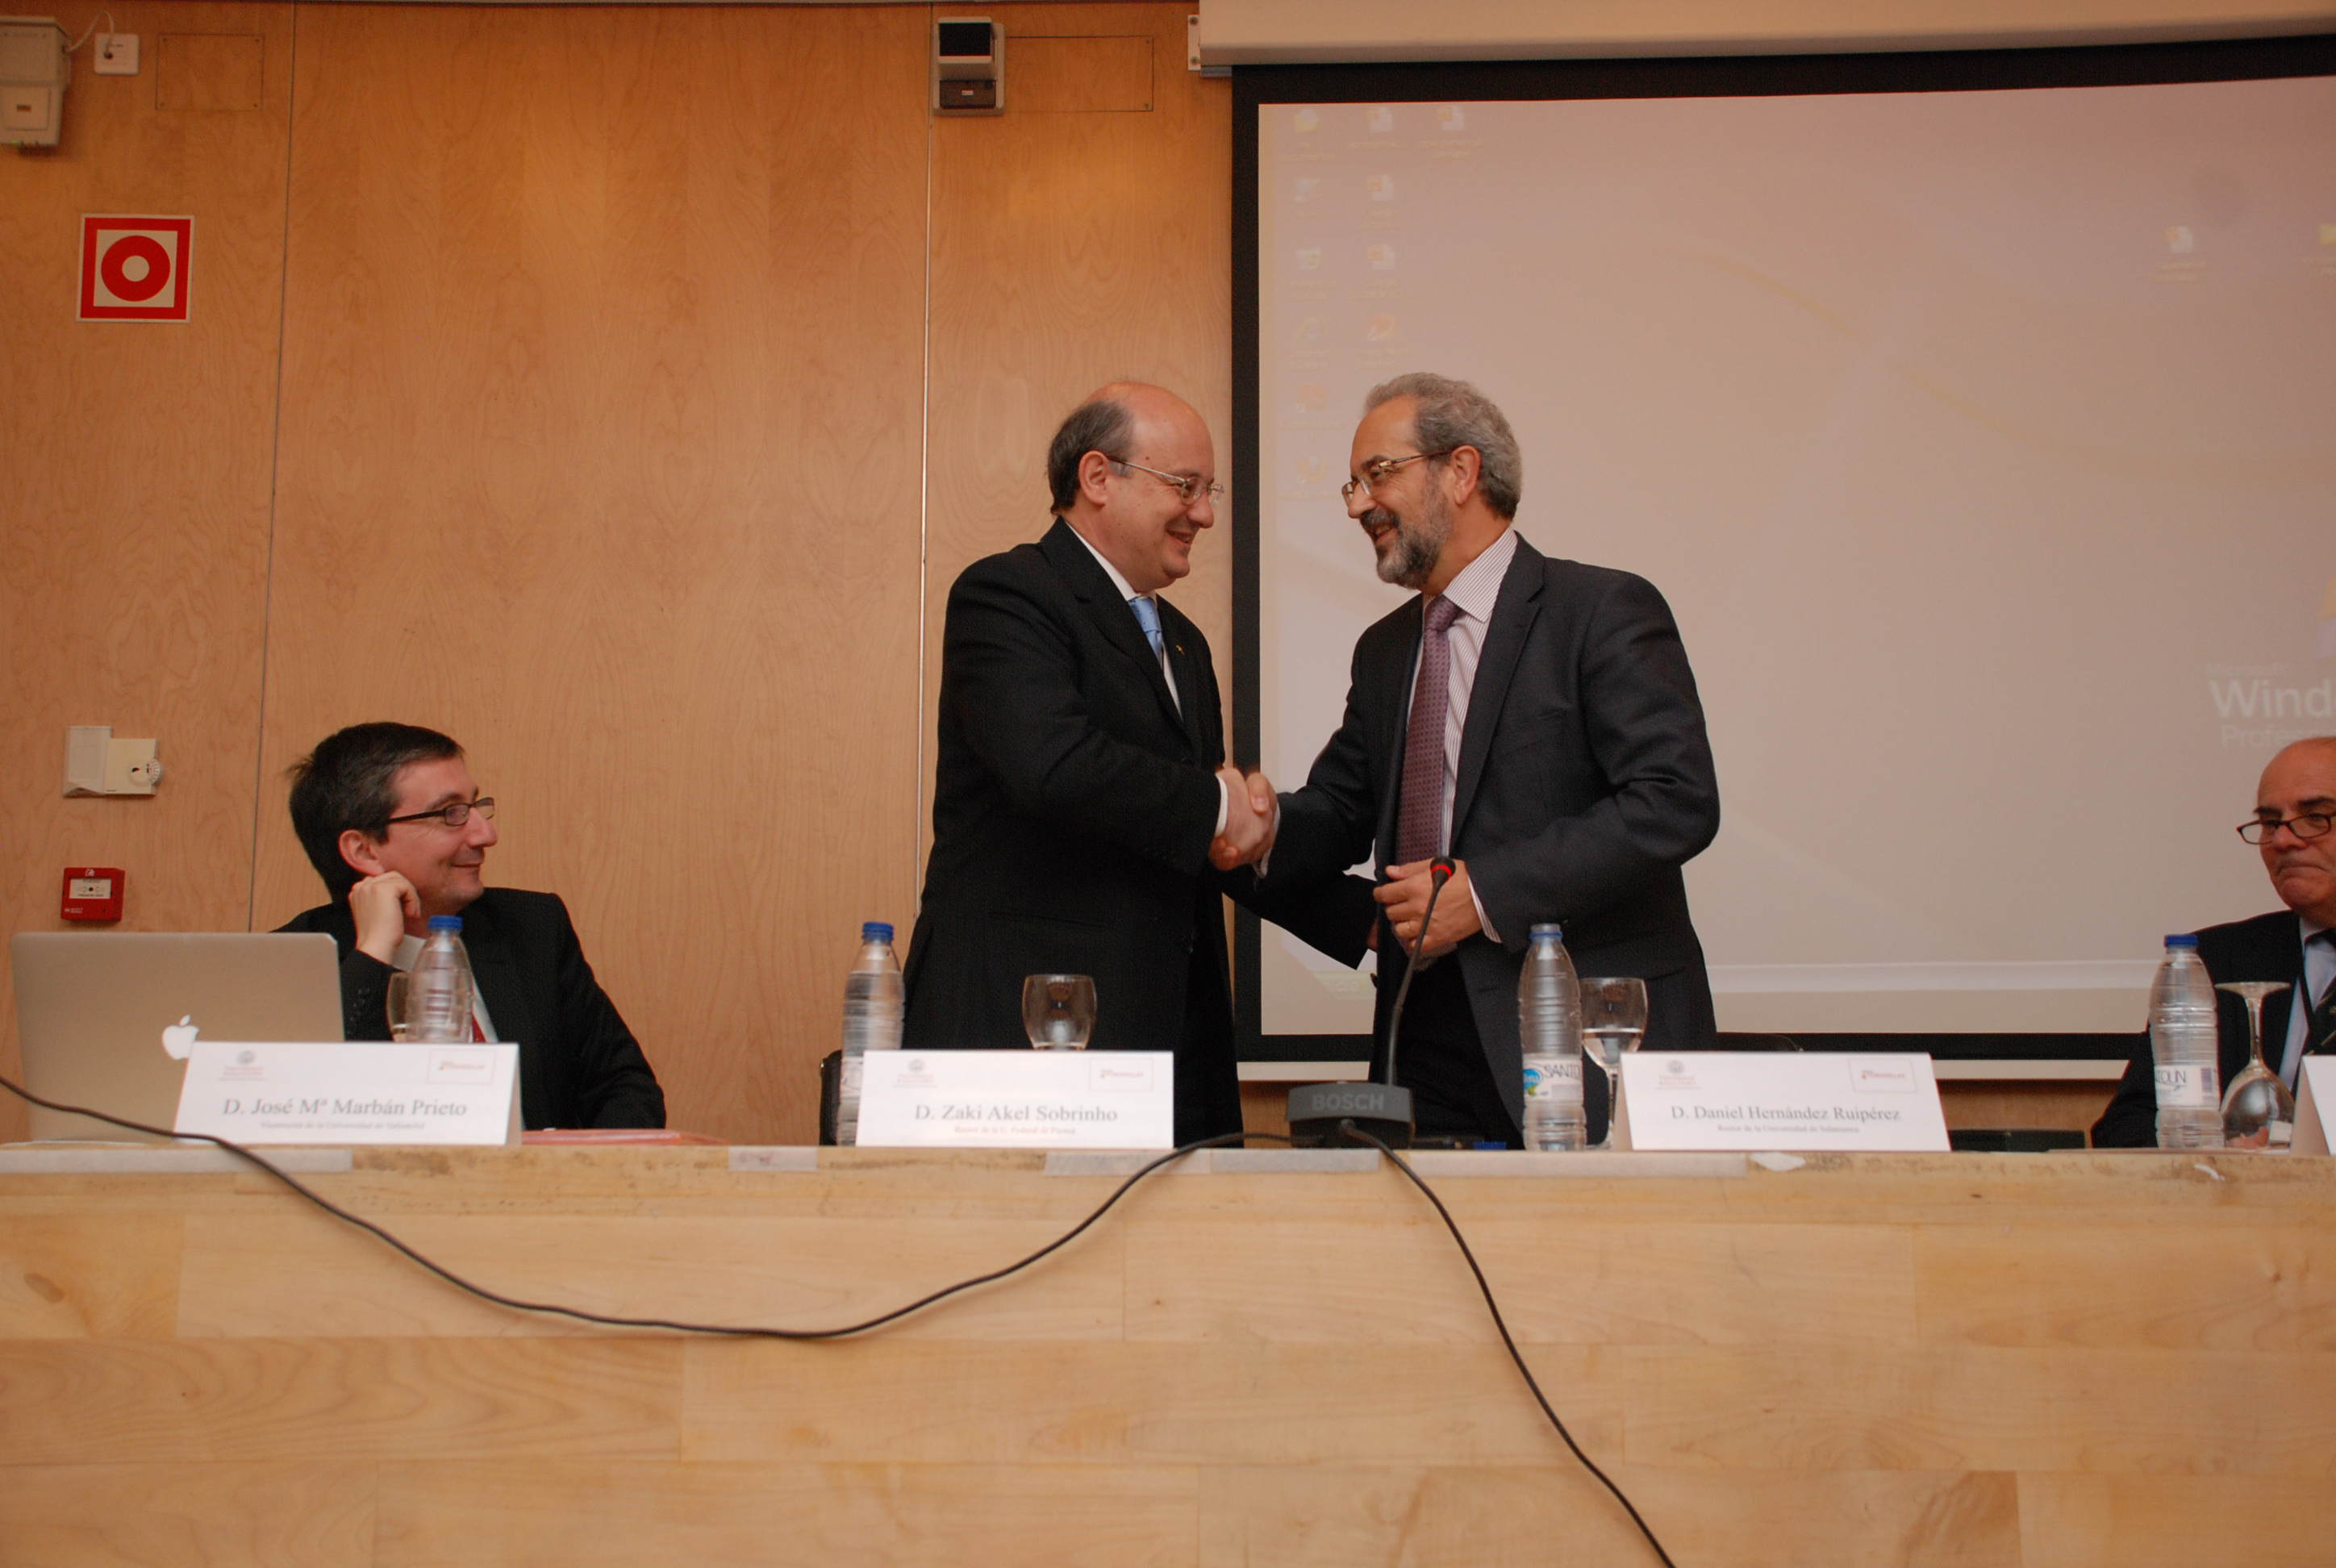 La Universidad Federal do Paraná toma el relevo de la Universidad de Salamanca al frente de la presidencia del Grupo Tordesillas